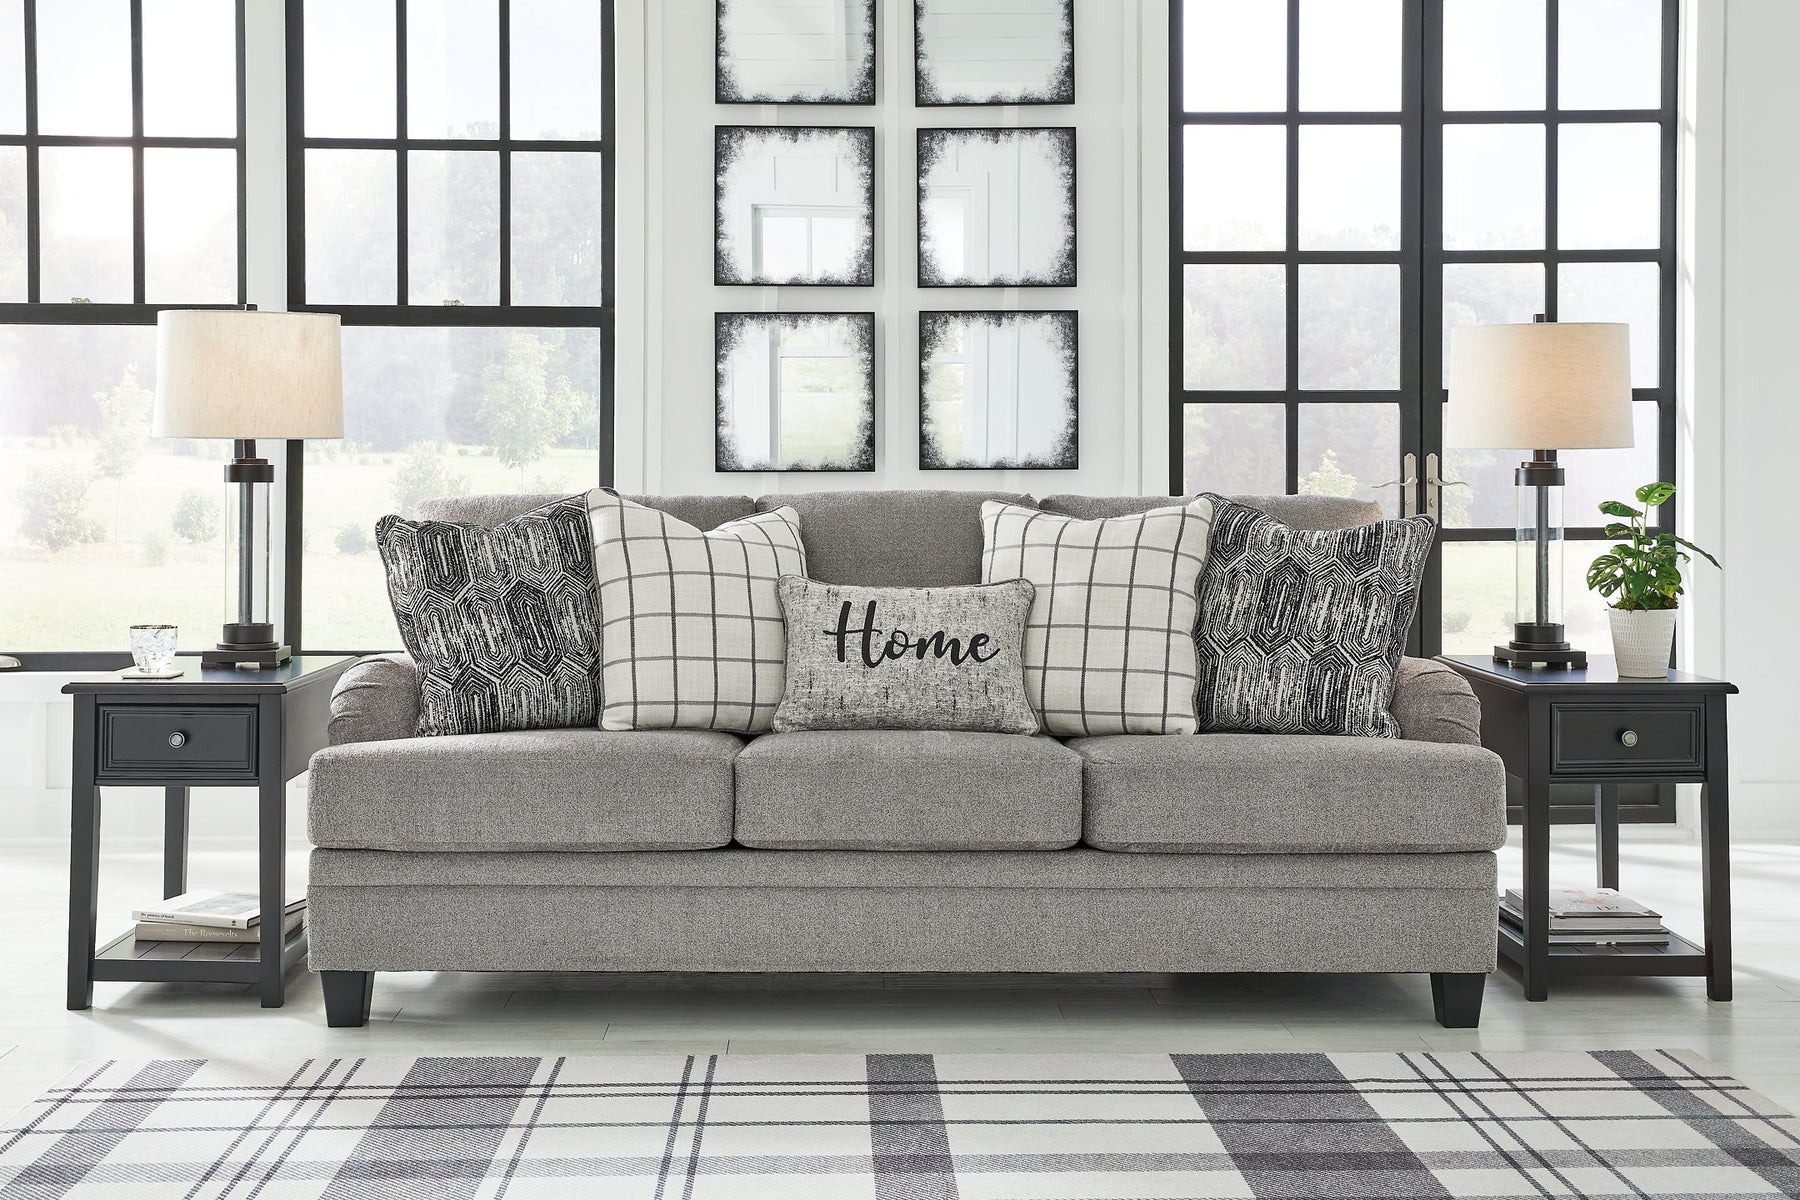 Davinca Living Room Set - Half Price Furniture